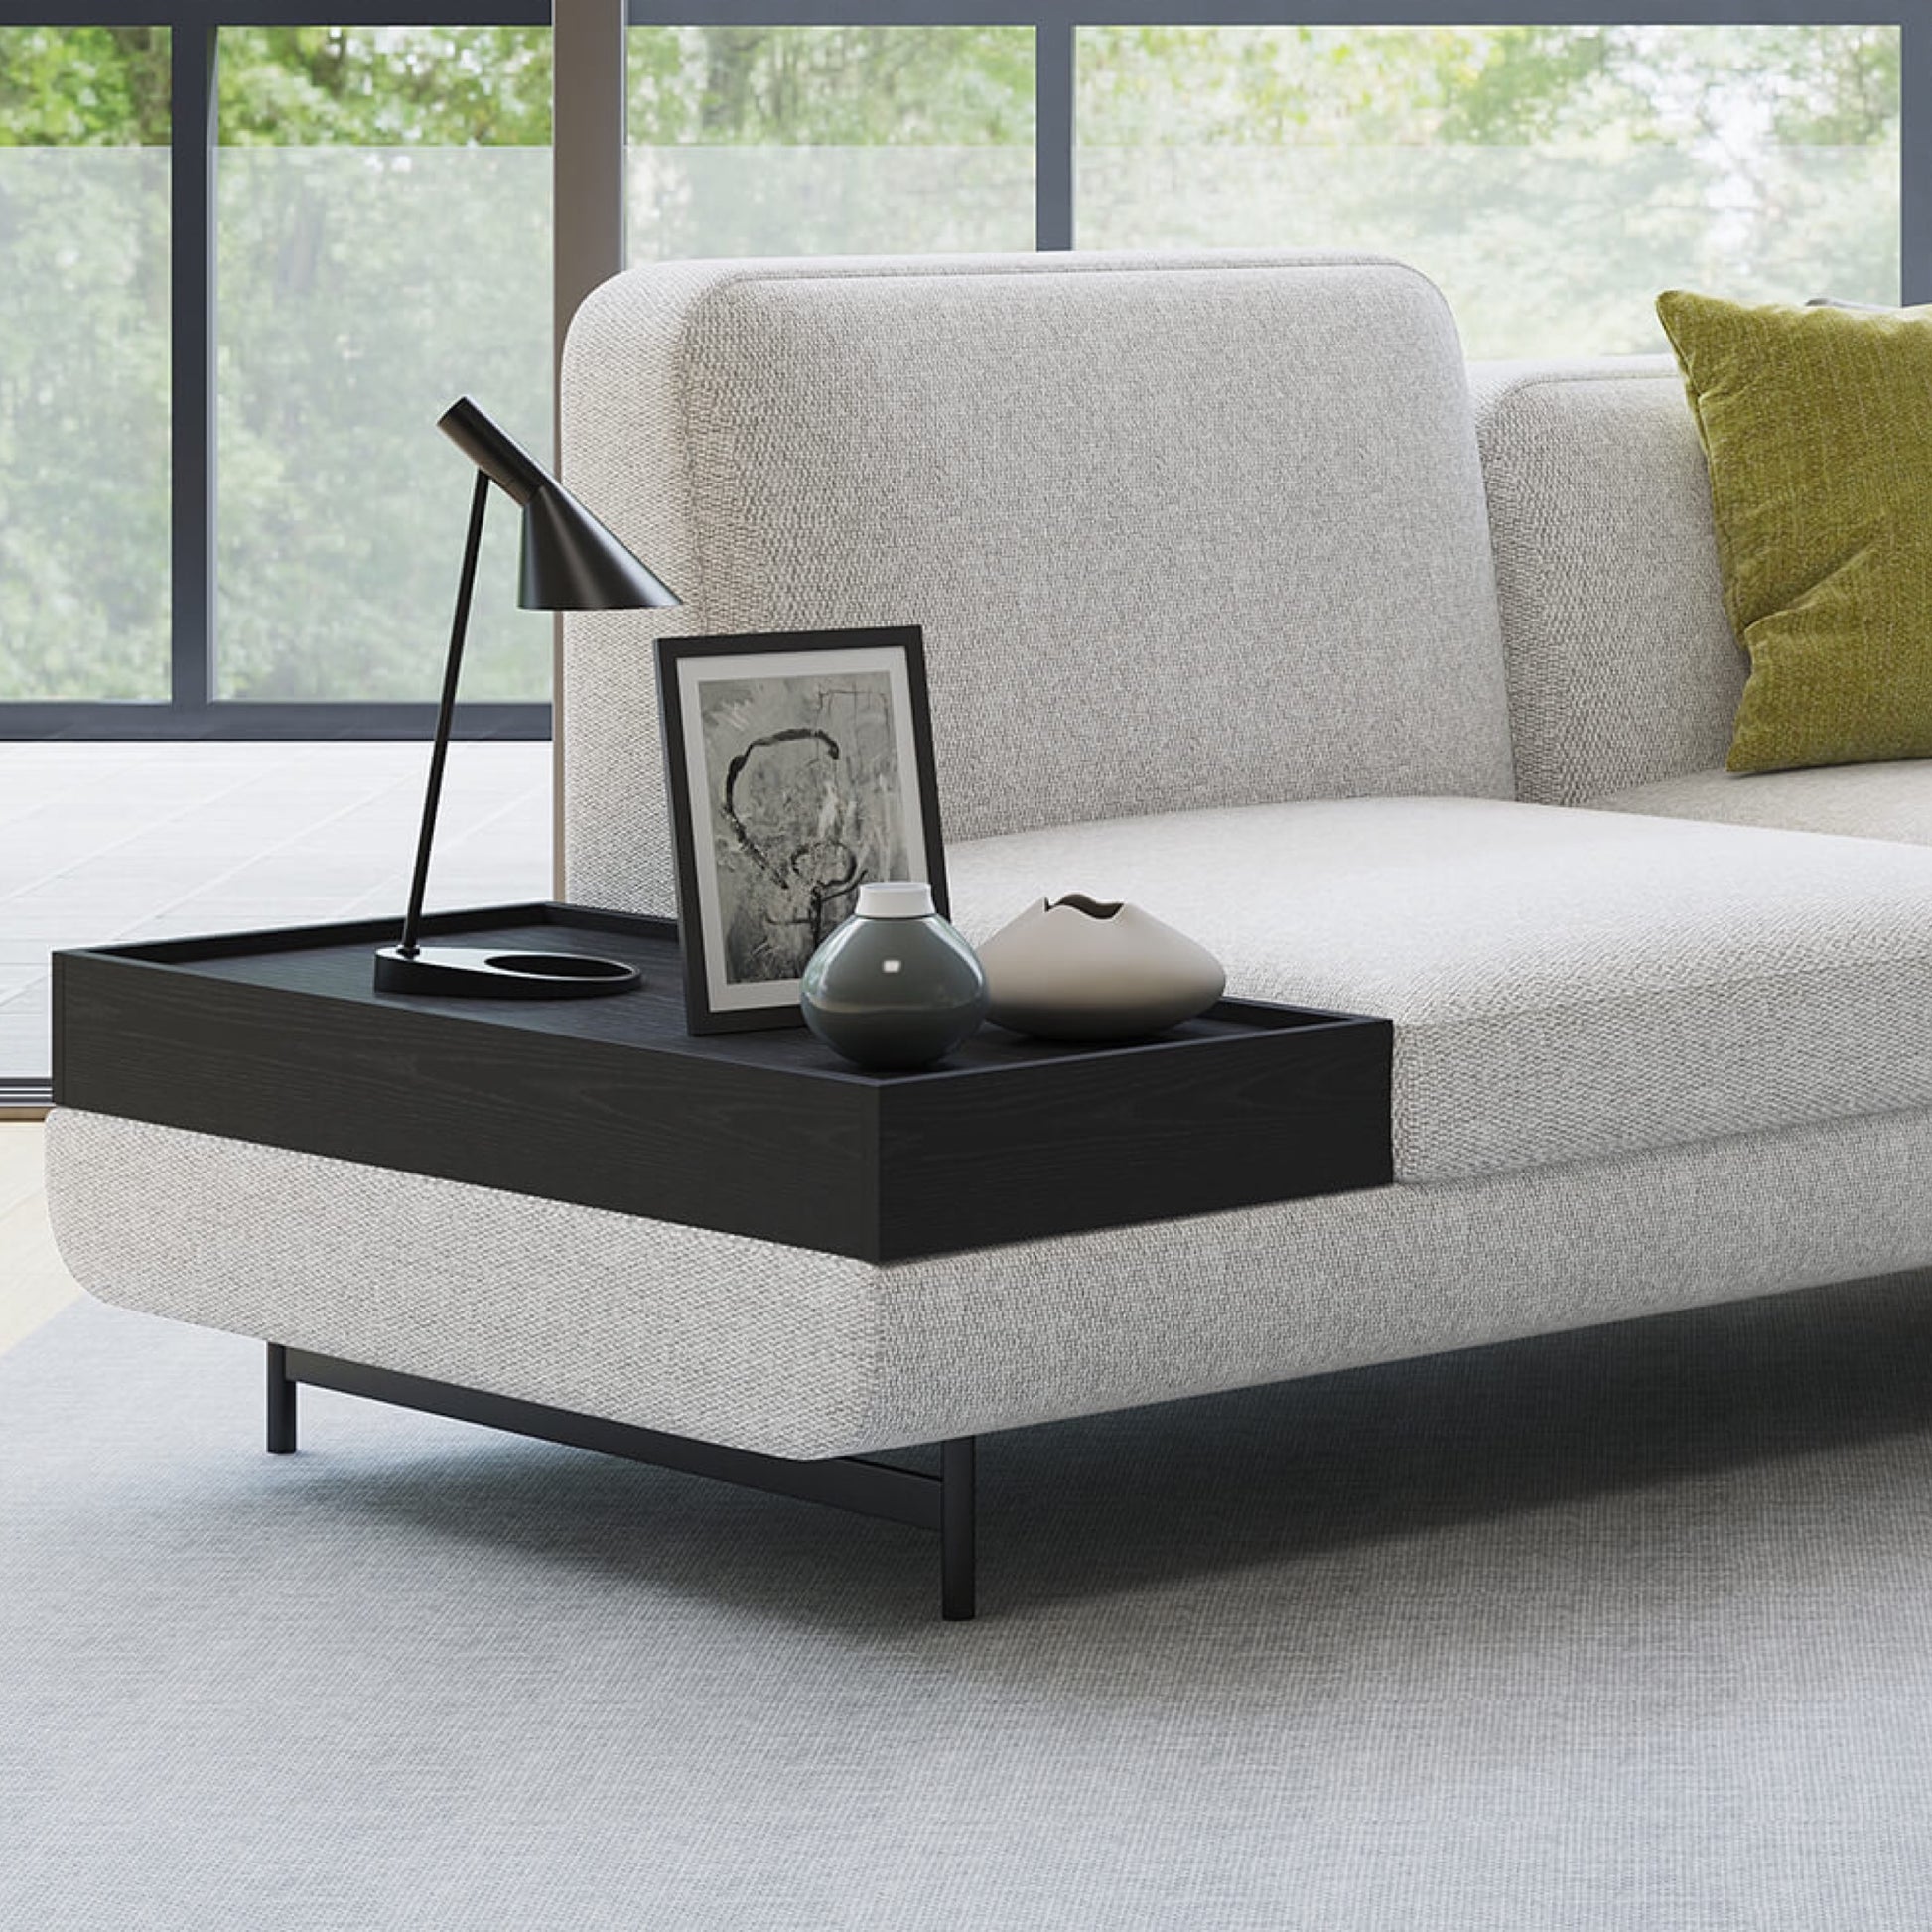 furniture-sofa-coffee table-comfort-livingroom